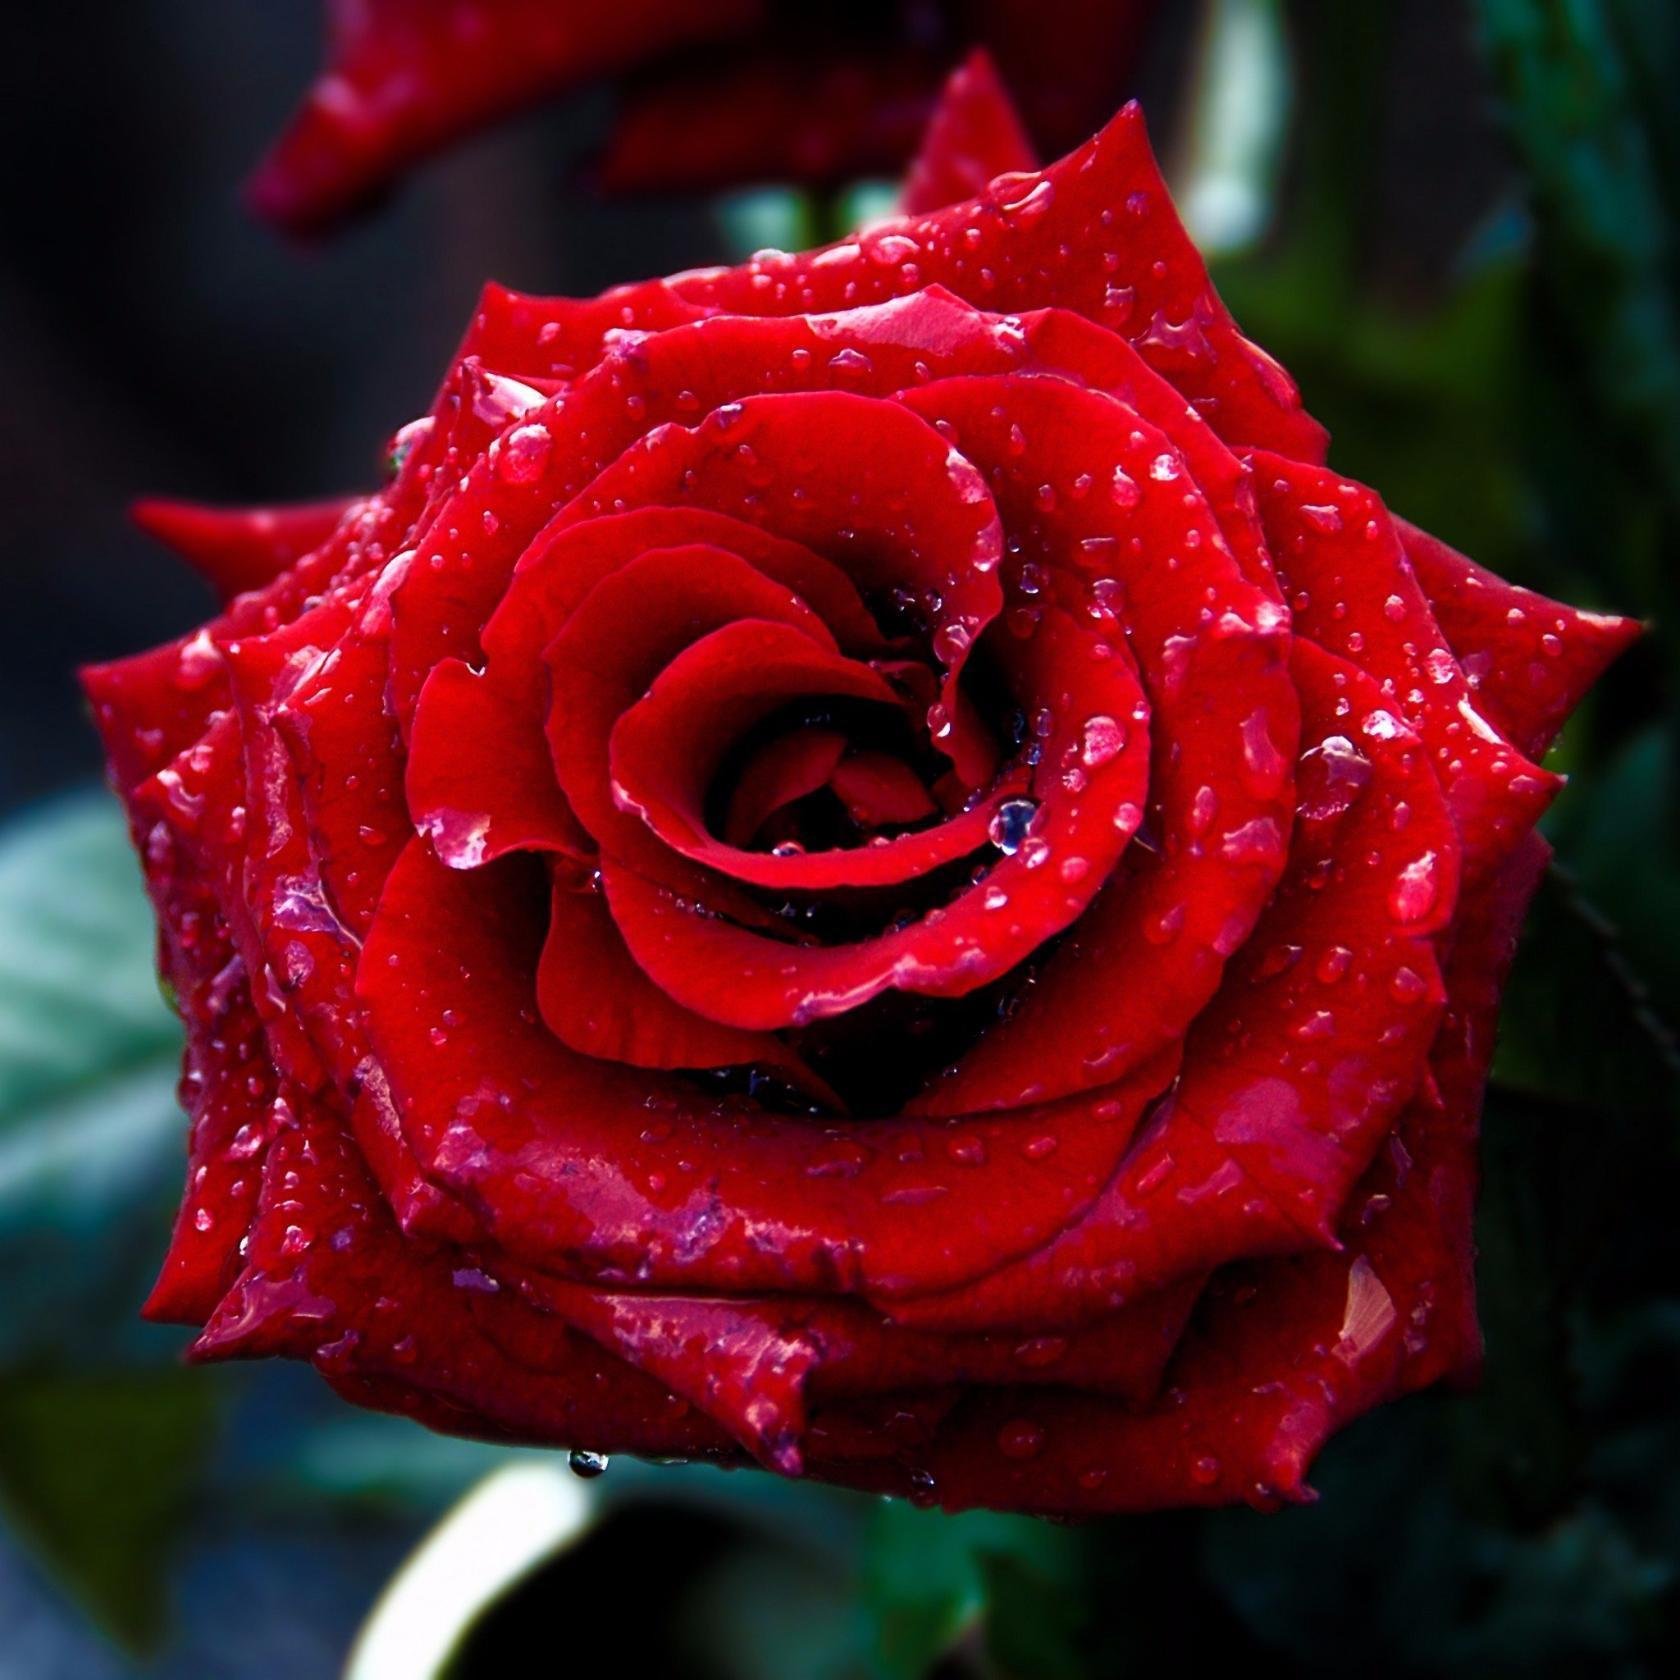 Самые красивые розы в мире